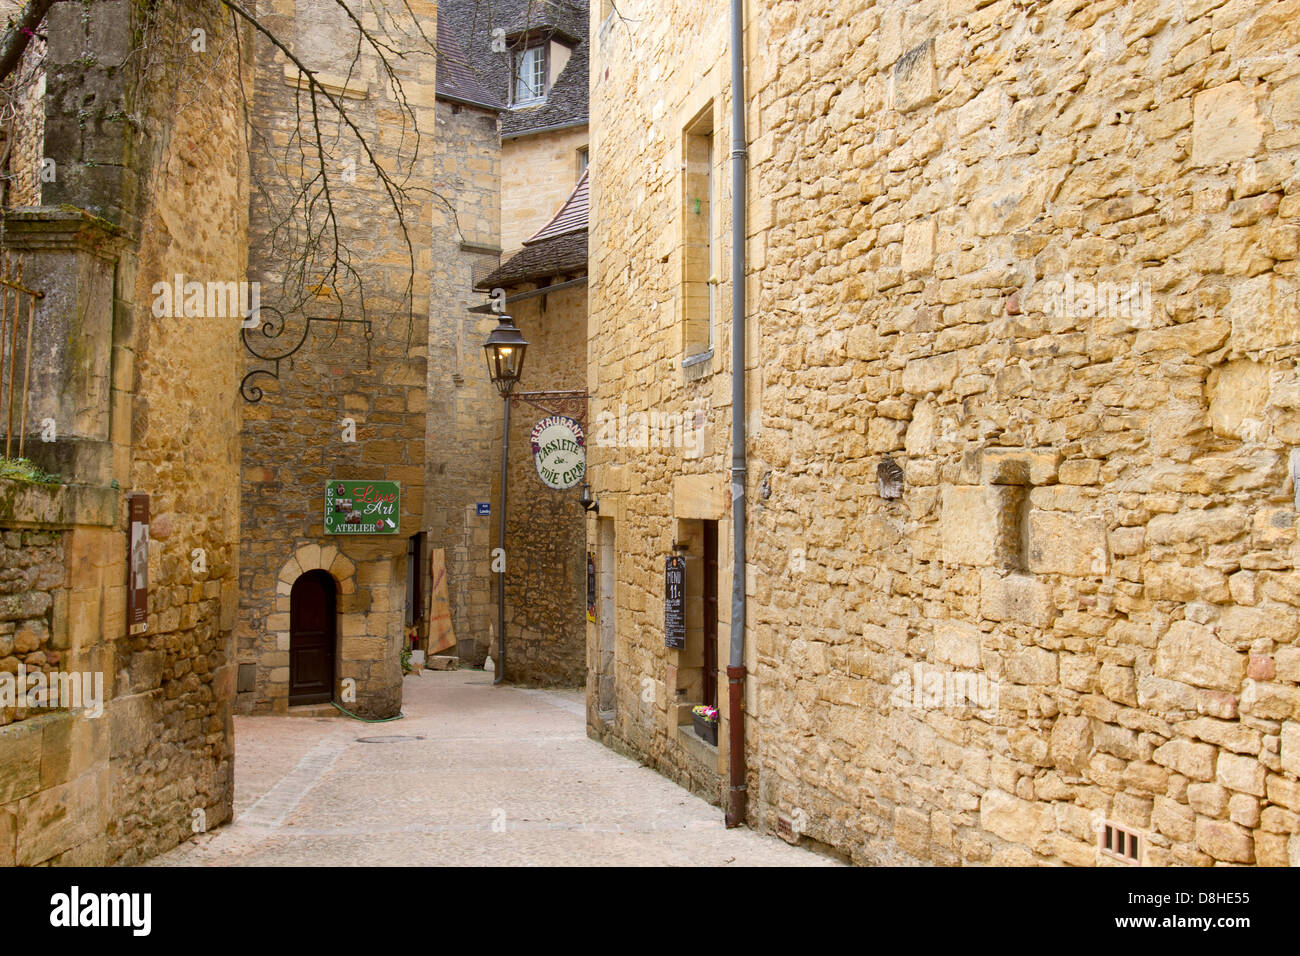 Boutiques une étroite rue pavée, entre les bâtiments en grès médiévale dans la charmante ville de Sarlat, Dordogne France Banque D'Images